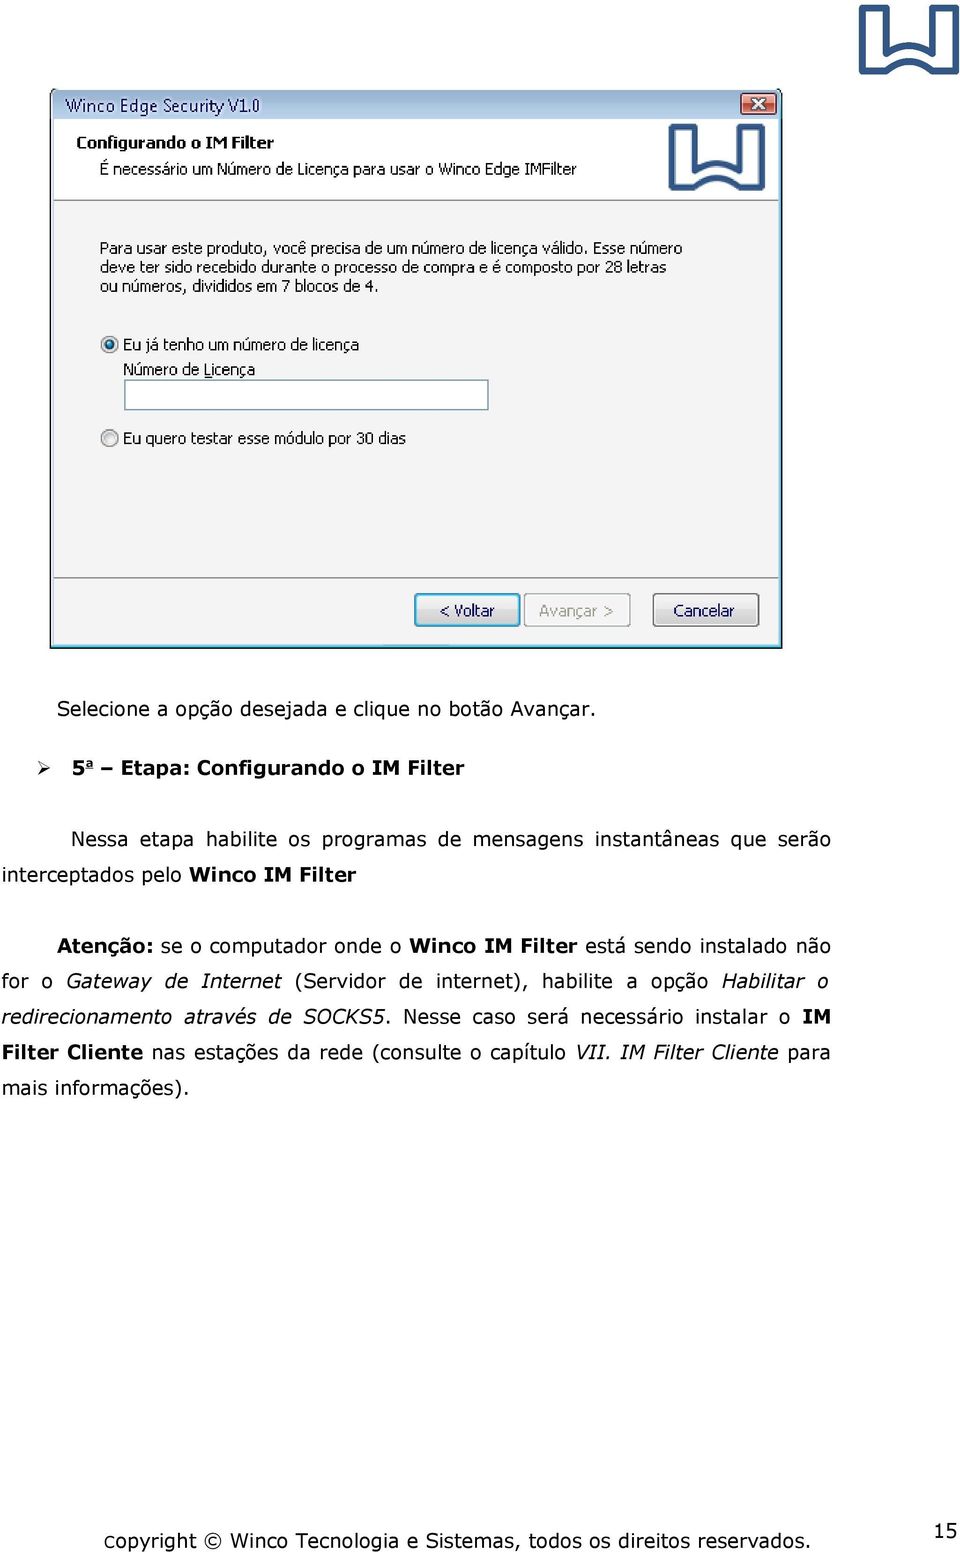 IM Filter Atenção: se o computador onde o Winco IM Filter está sendo instalado não for o Gateway de Internet (Servidor de internet),